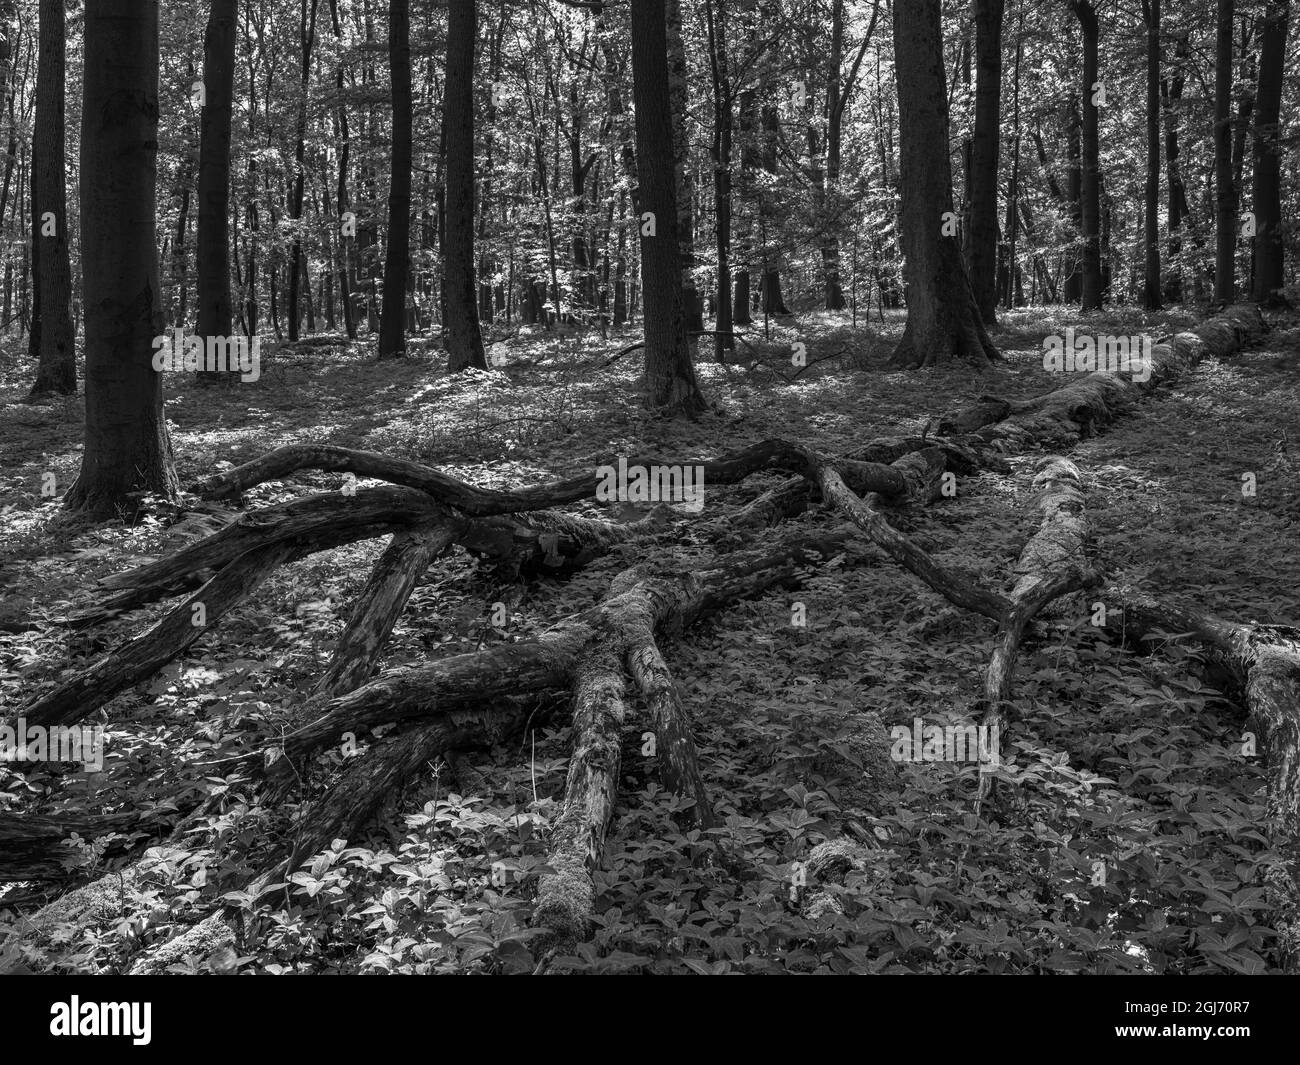 Bois mort, débris ligneux grossiers et arbres tombés dans la forêt de Hainich en Thuringe, parc national et une partie du site du patrimoine mondial de l'UNESCO. Primeva Banque D'Images